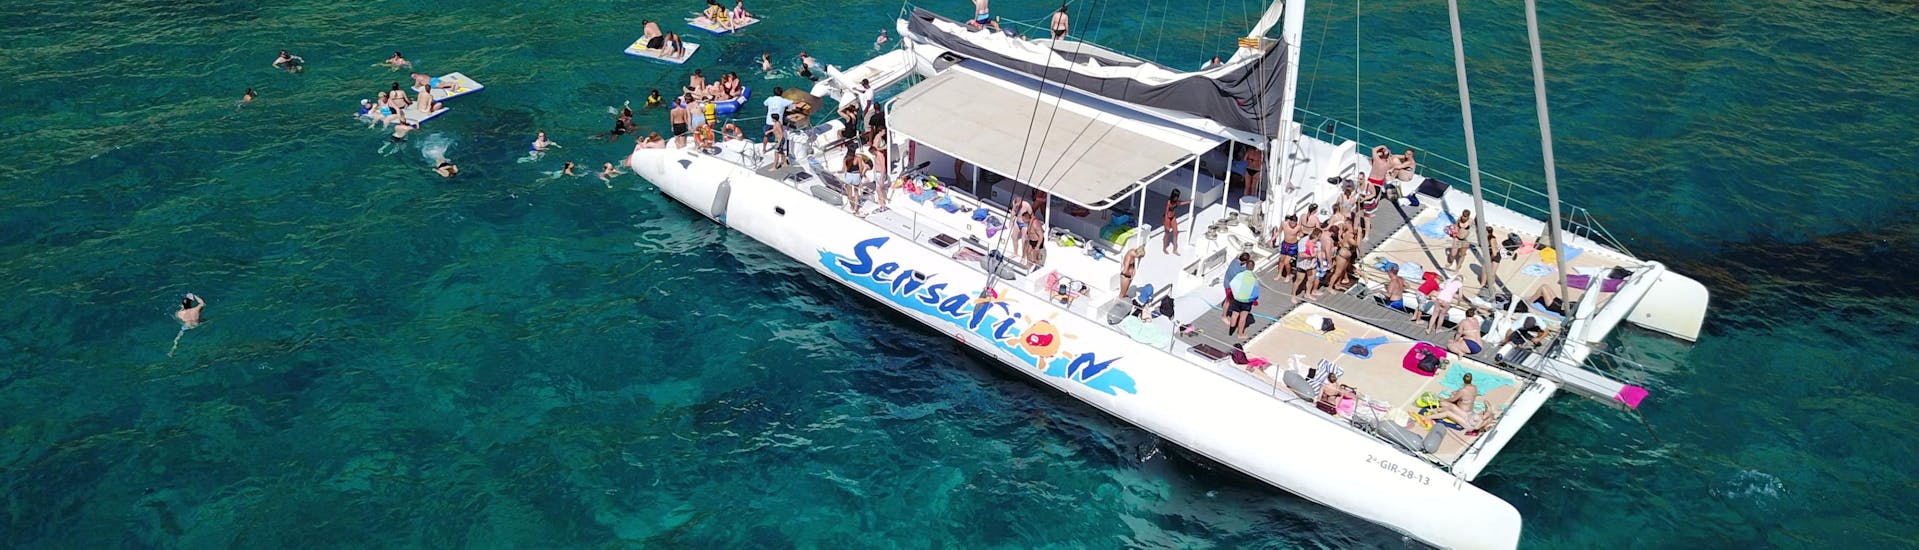 Gita privata in catamarano da Lloret de Mar a Playa Santa Cristina con bagno in mare e party.